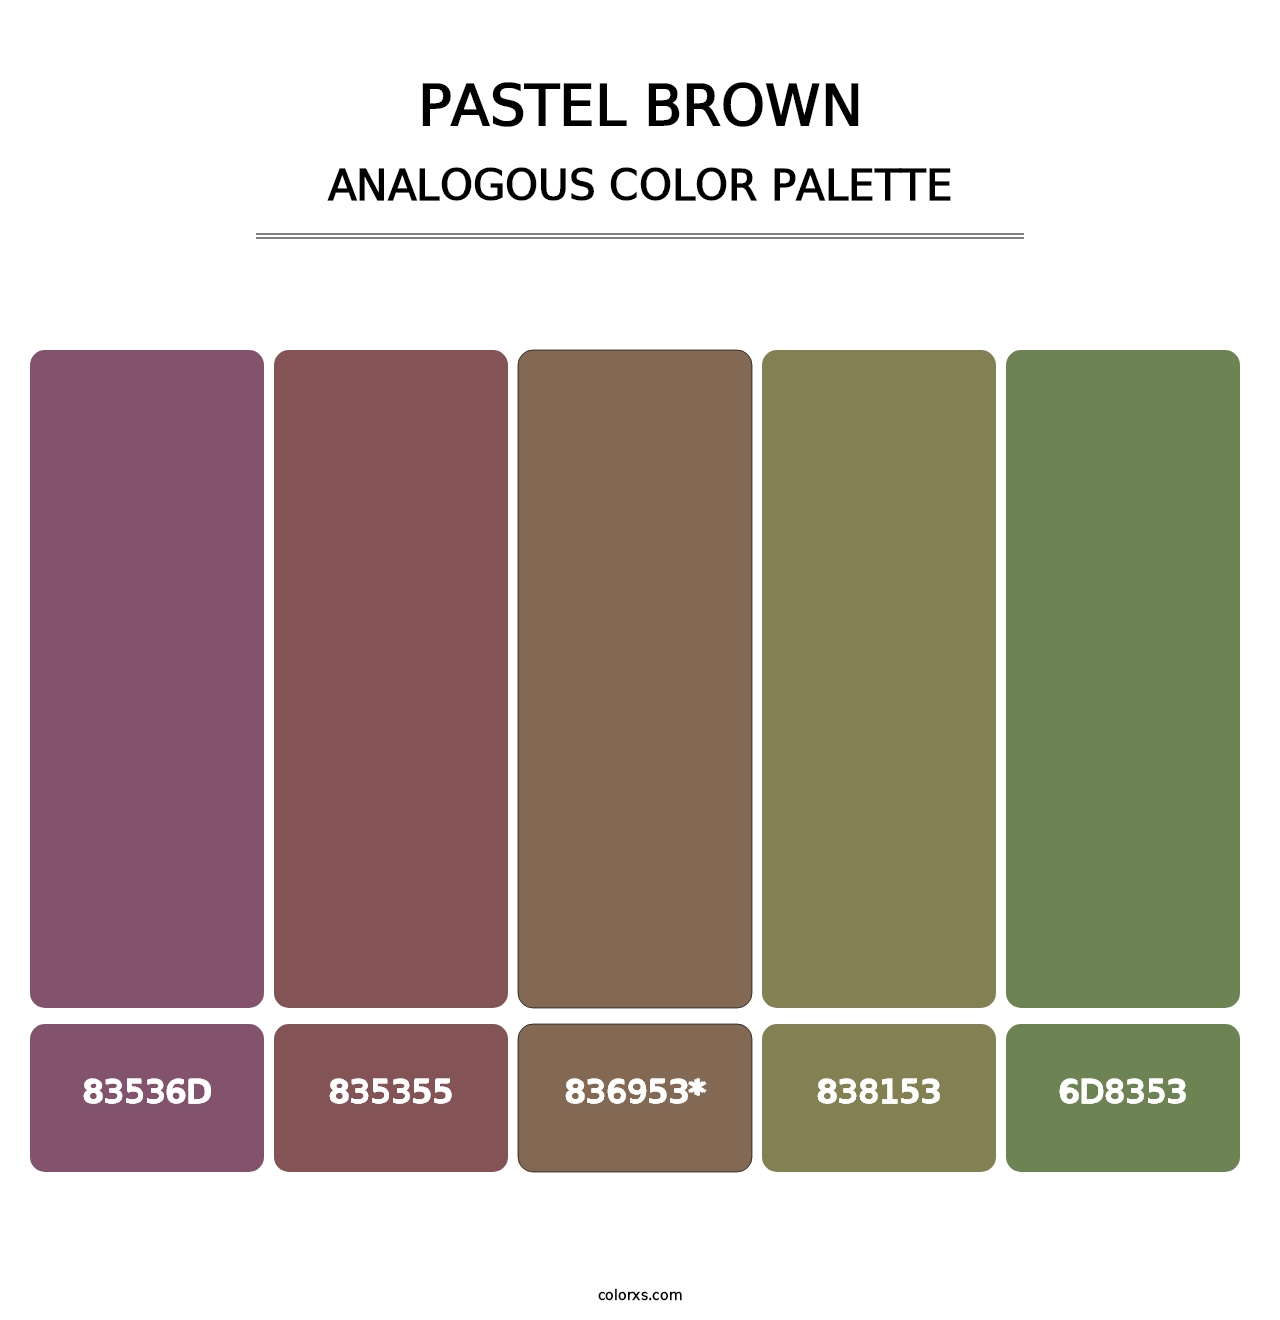 Pastel Brown - Analogous Color Palette